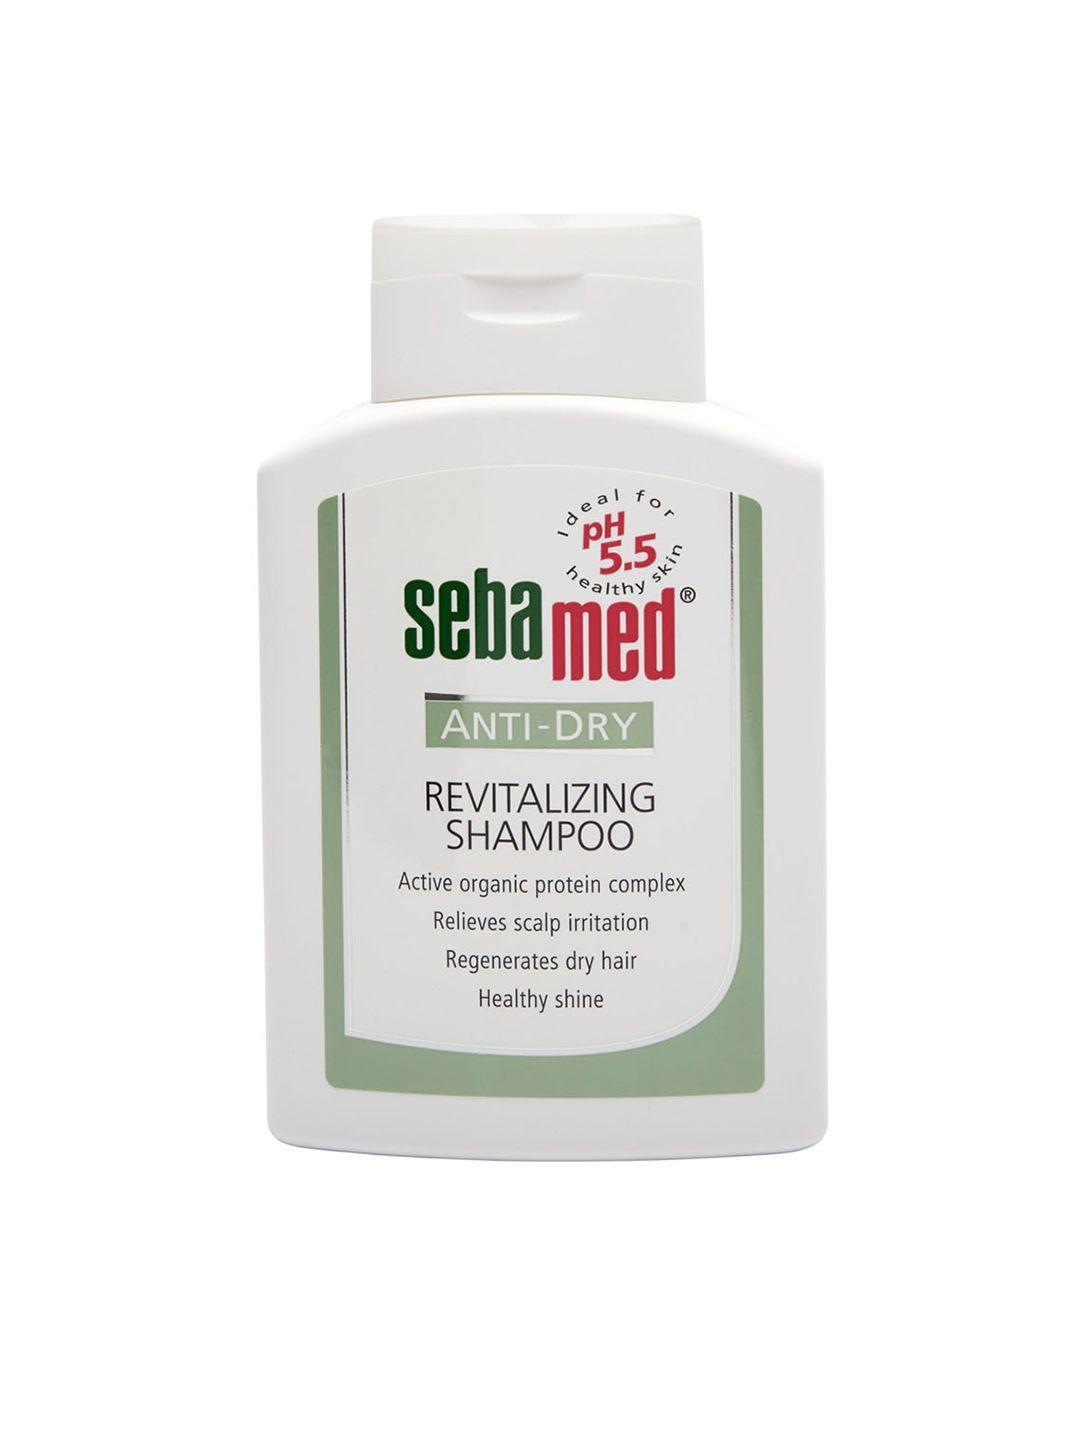 sebamed-unisex-anti-dry-revitalizing-shampoo-200-ml